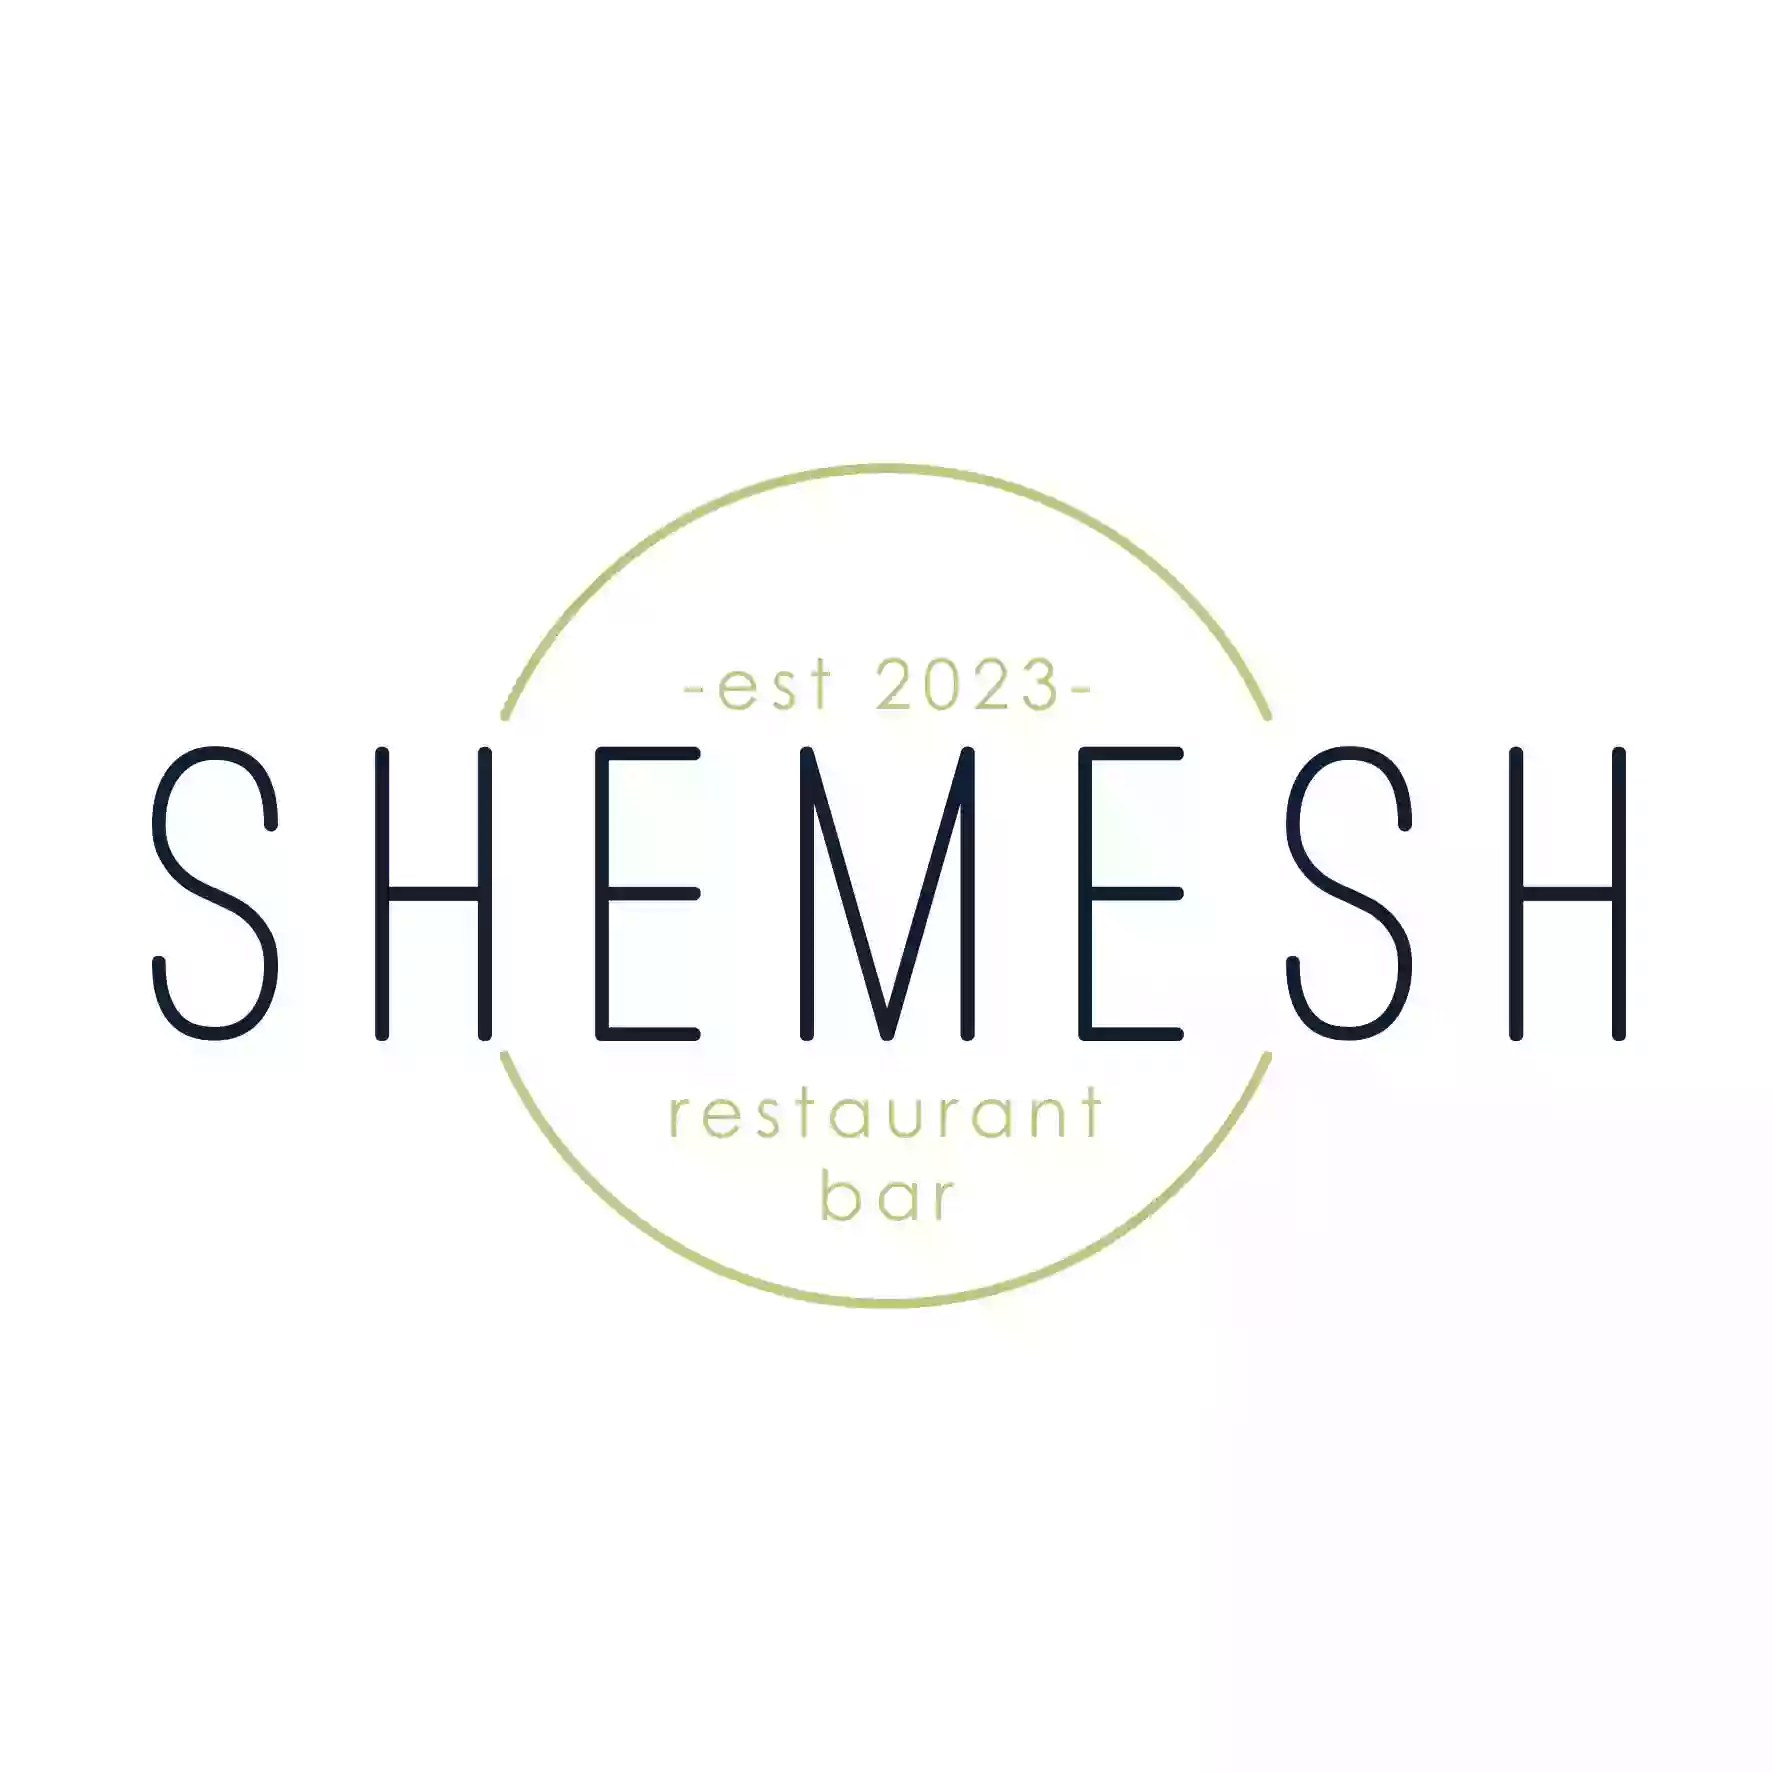 Shemesh Restaurant & Bar